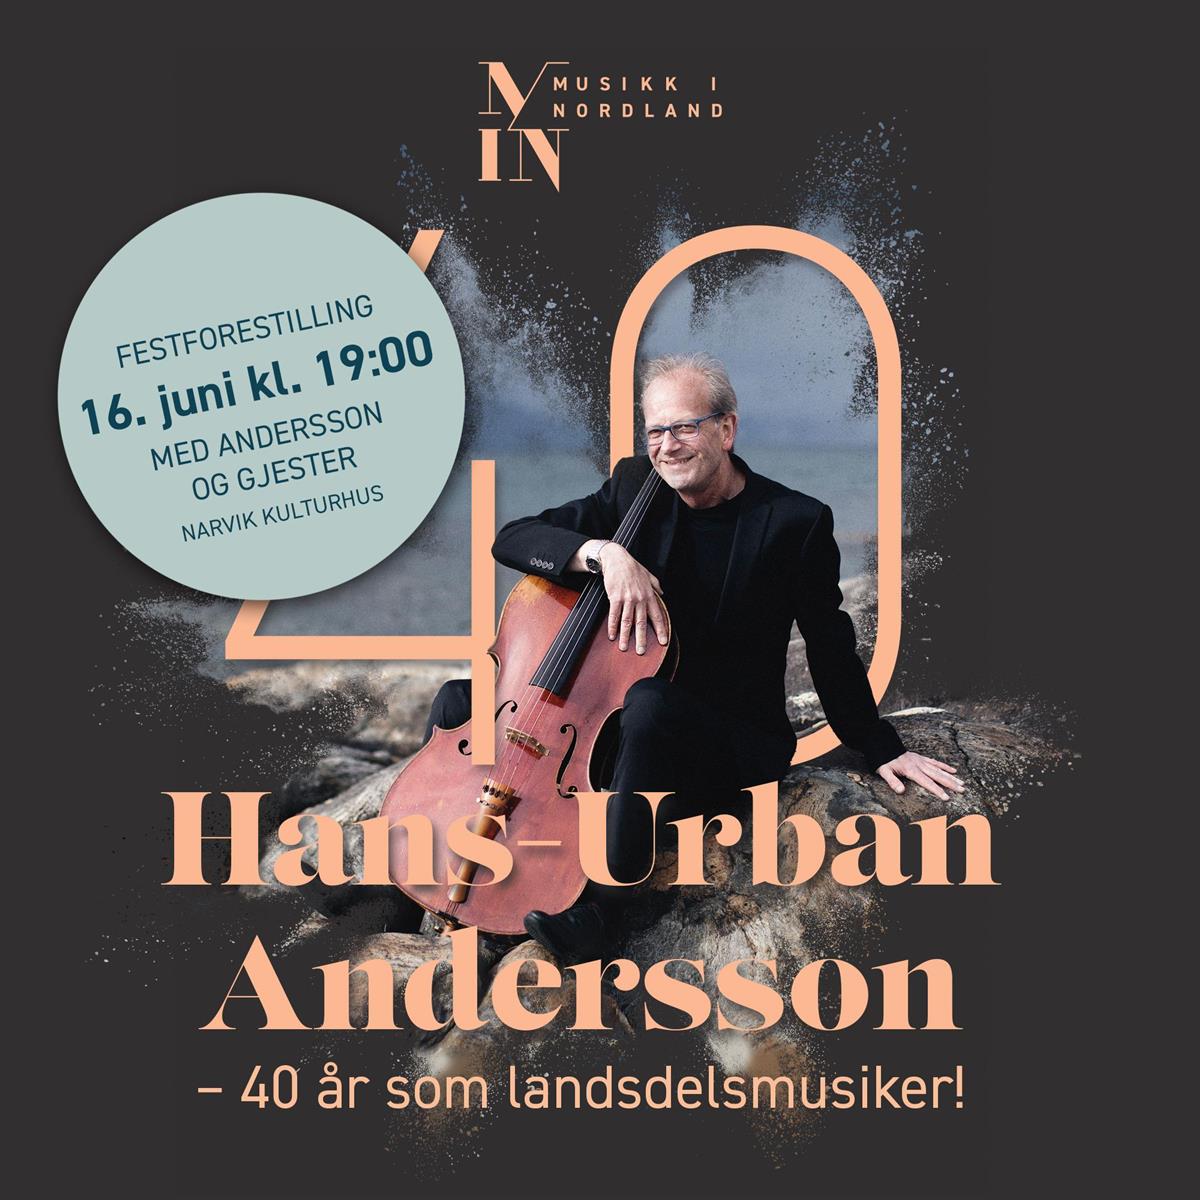 Konsert med Hans-Urban Andersson 16. juni - Klikk for stort bilde